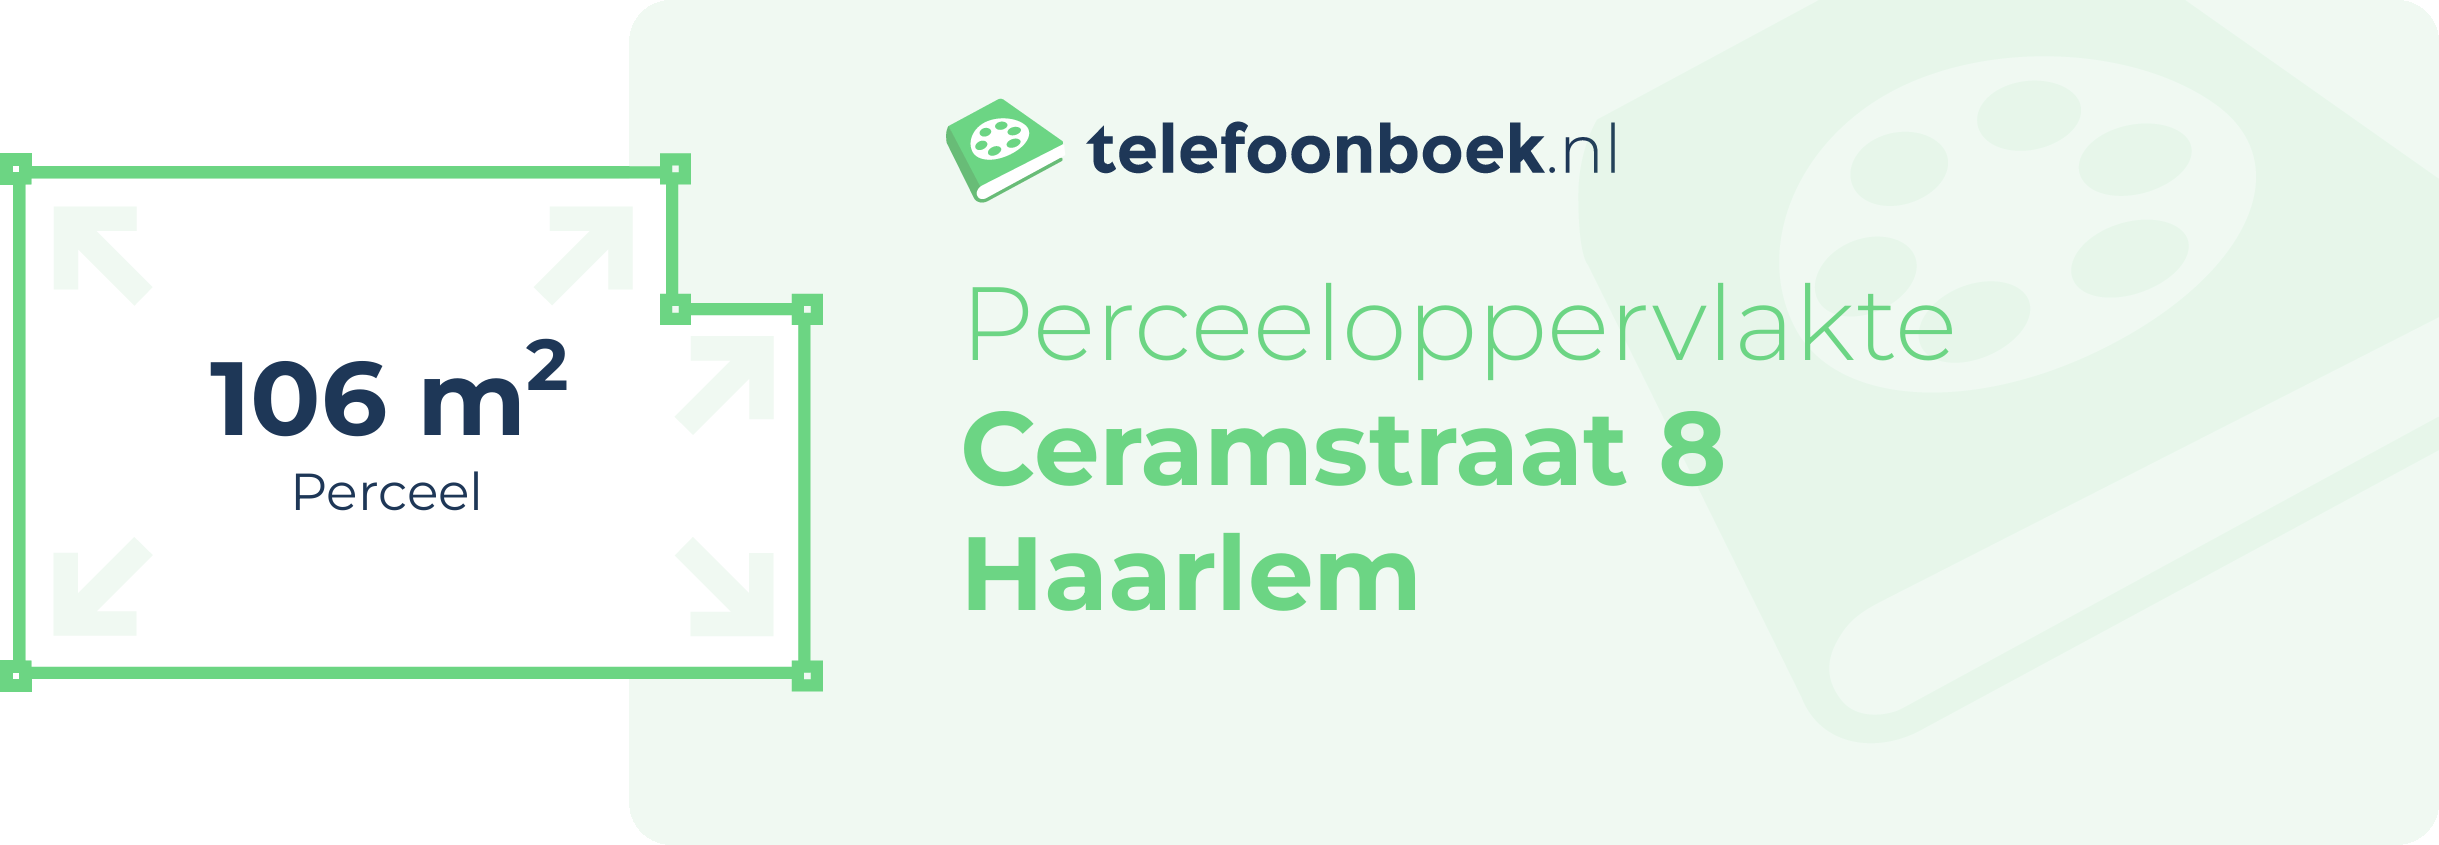 Perceeloppervlakte Ceramstraat 8 Haarlem